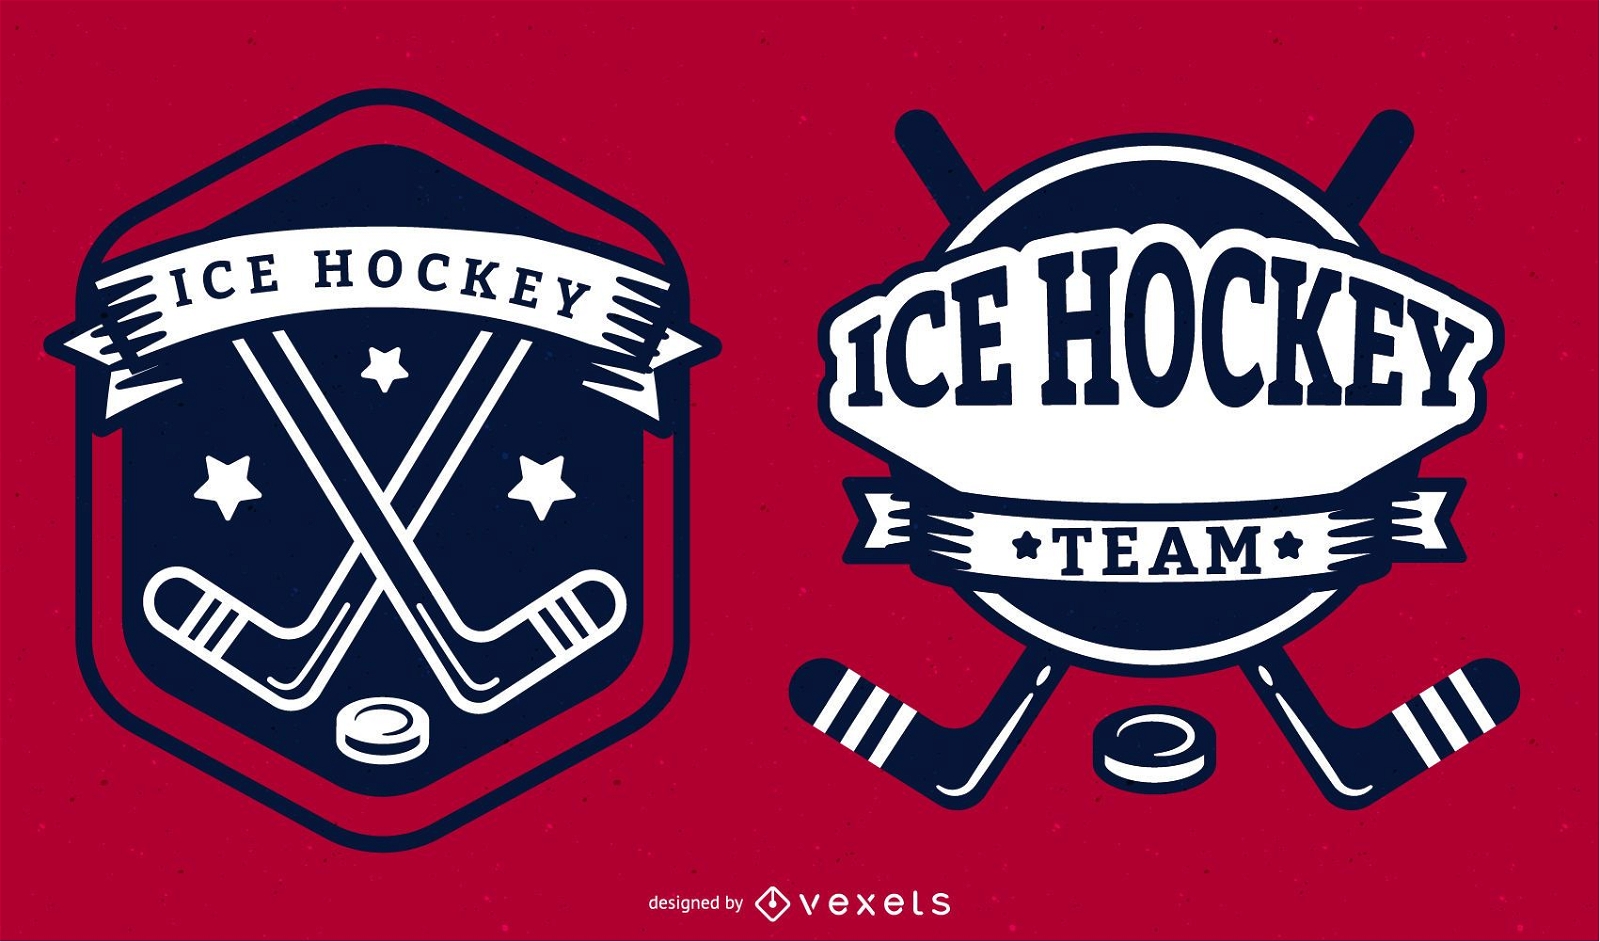 Ilustraci?n de la insignia del equipo de hockey sobre hielo